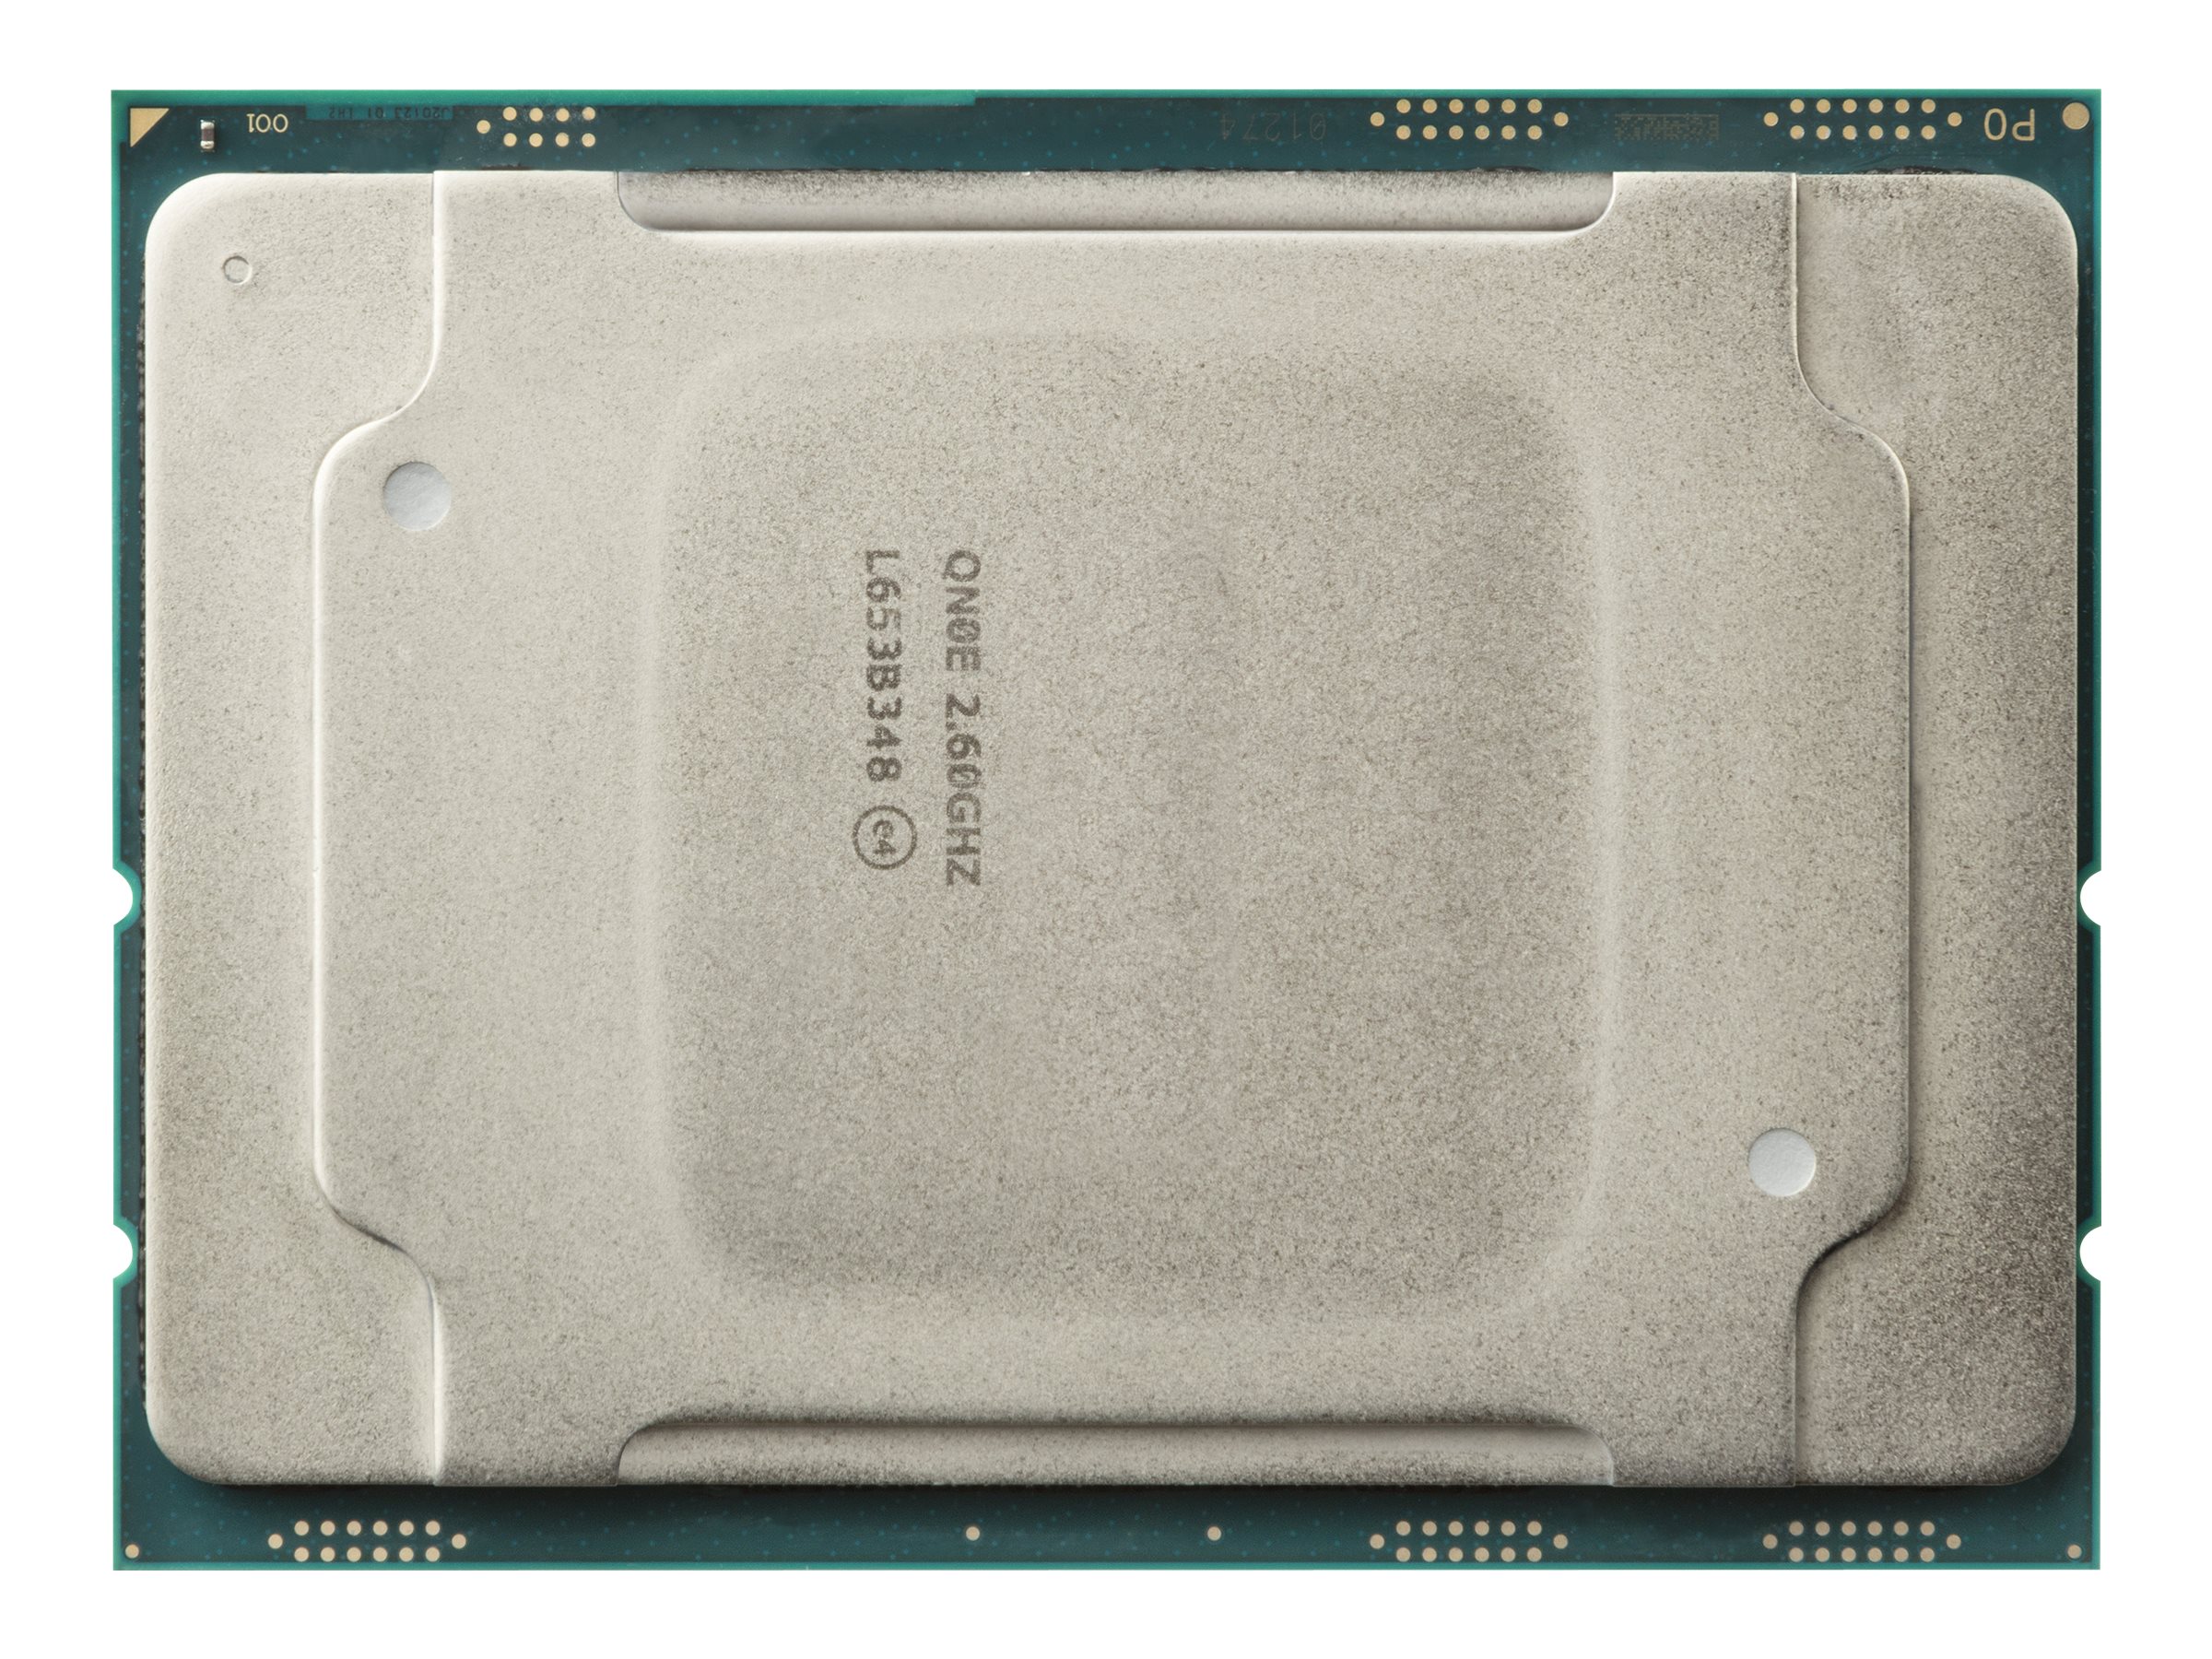 بنچمارک ها و مروری بر پردازنده Intel Xeon Silver 4114